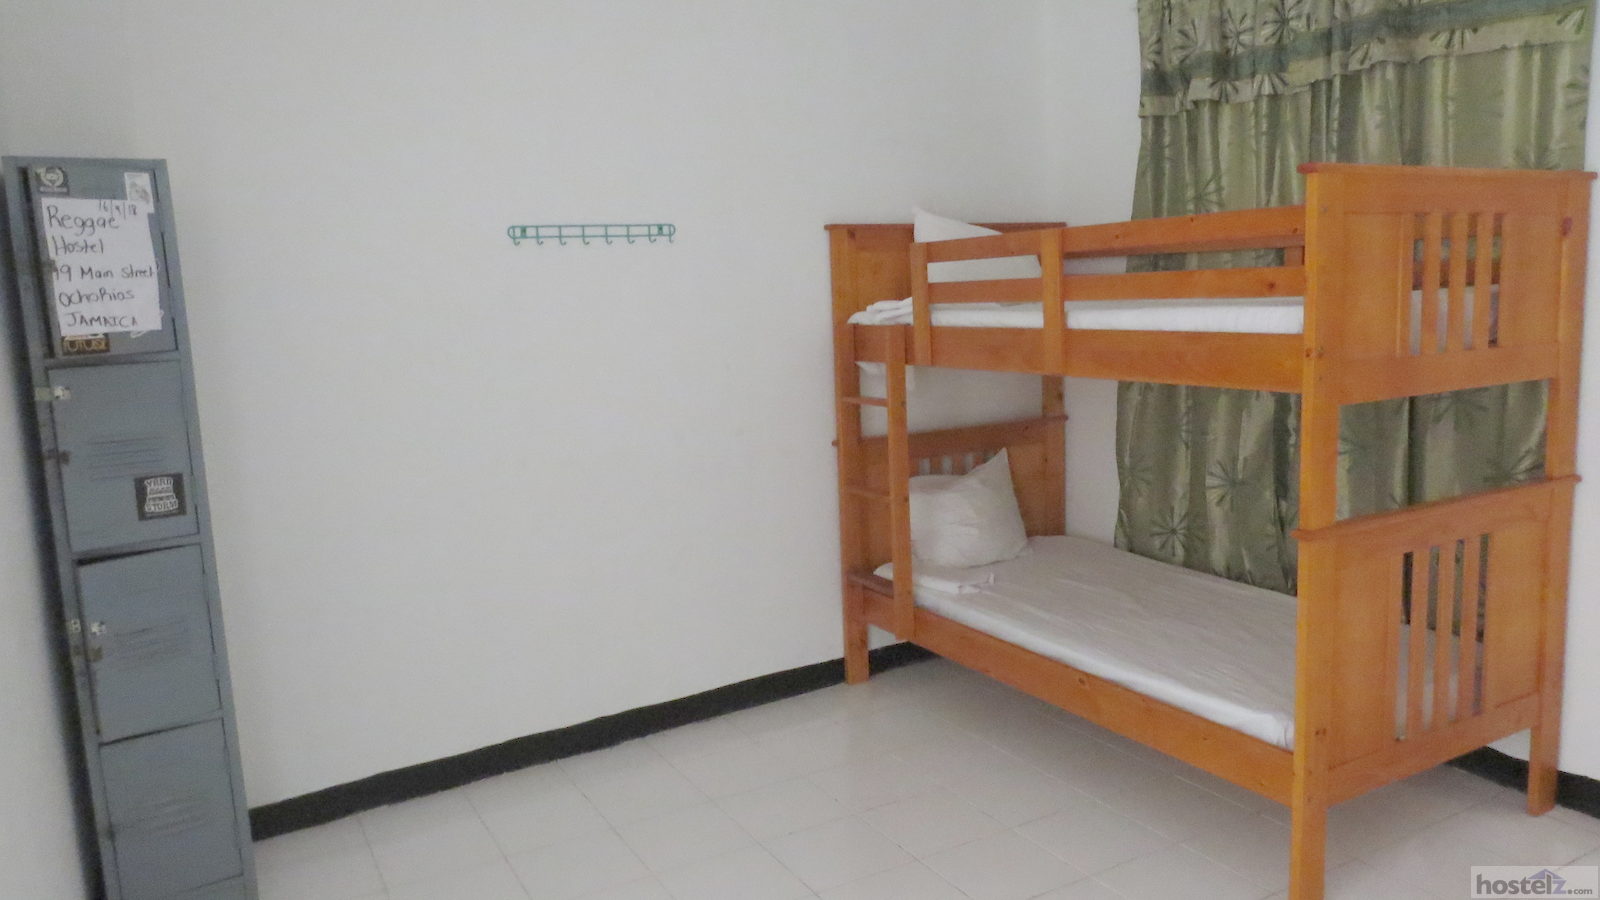 4-Bed En Suite Dorm